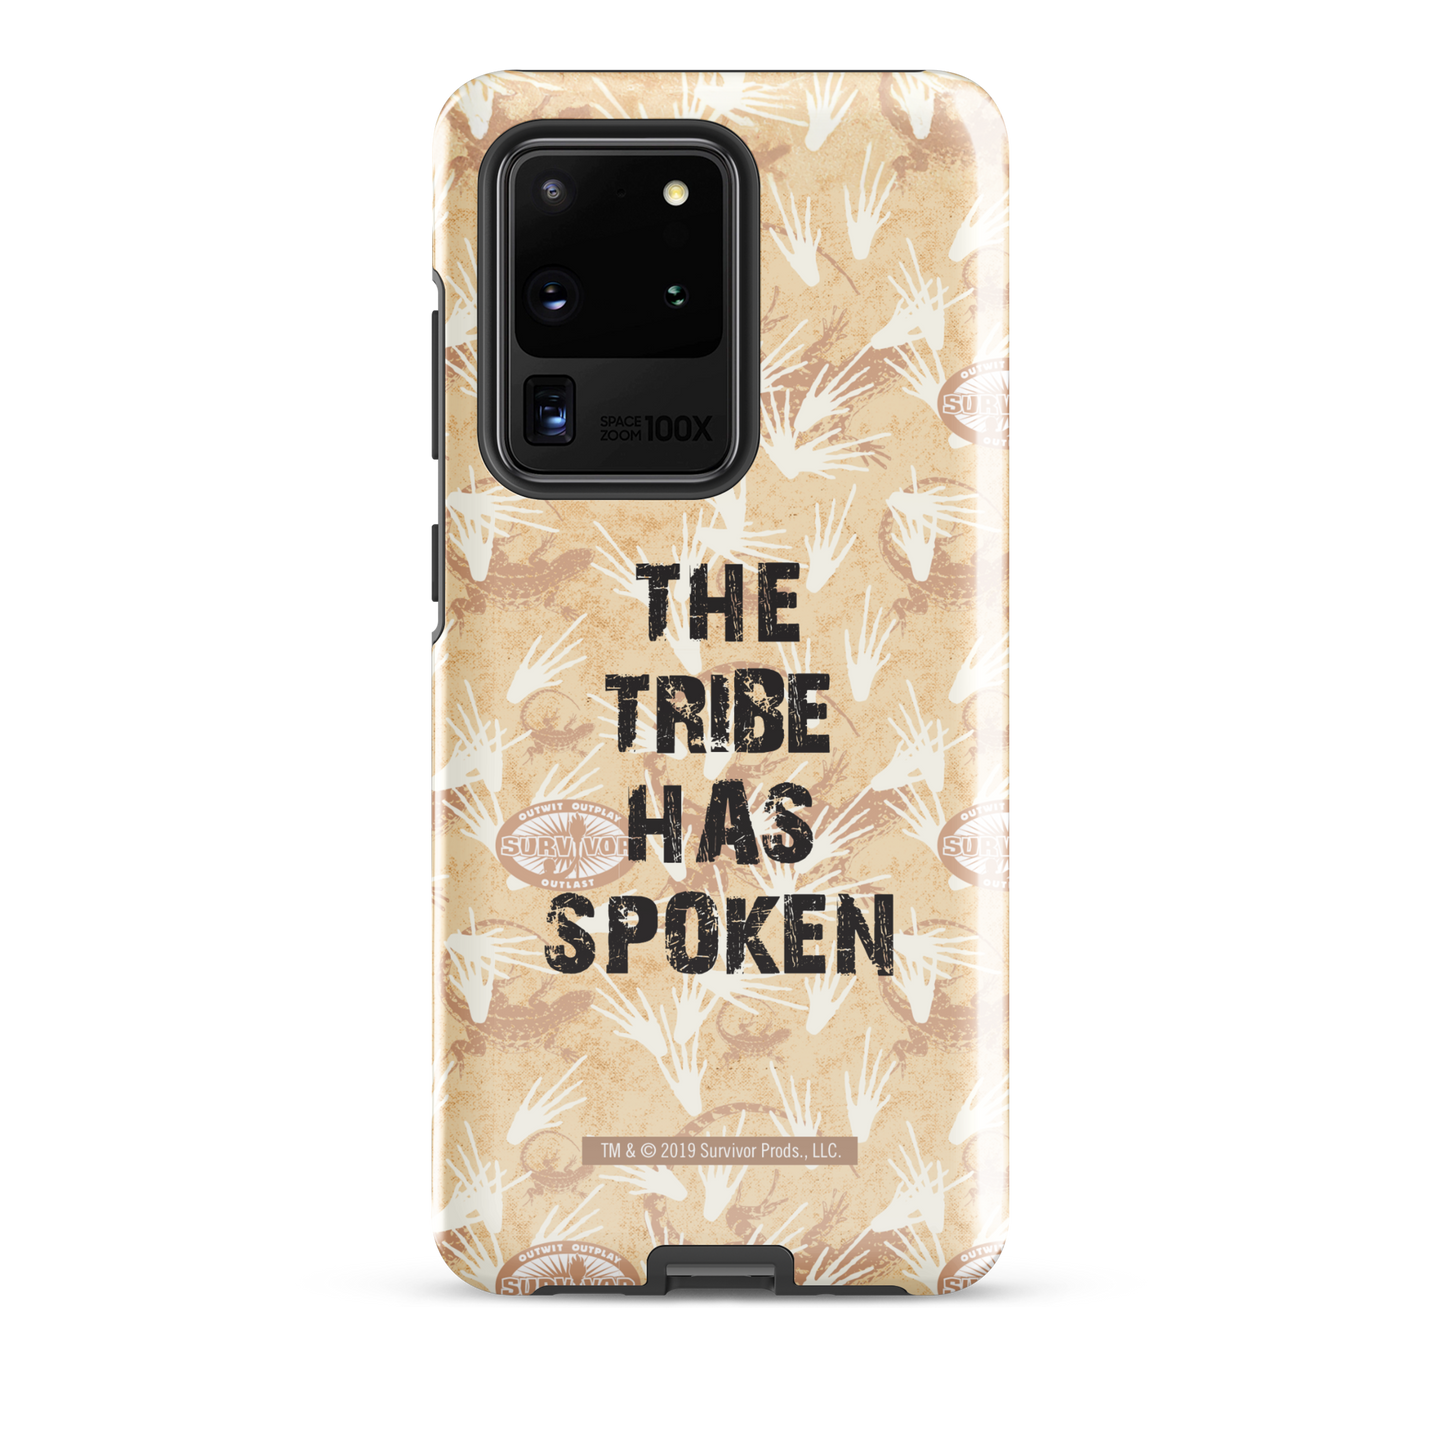 Survivor The Tribe Has Spoken Tough Phone Case - Samsung